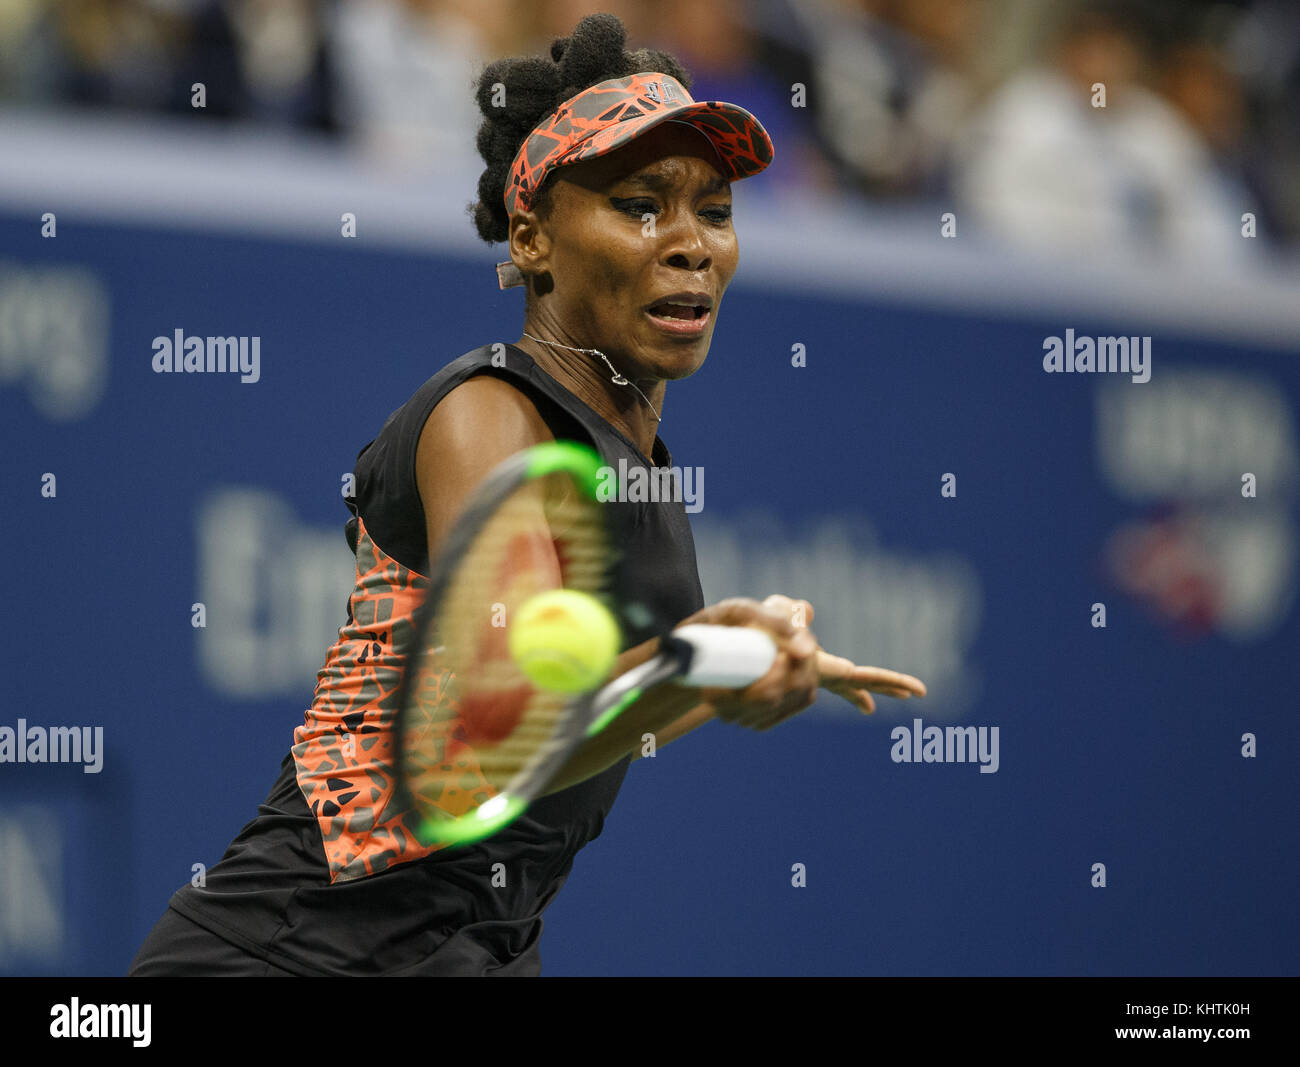 American giocatore di tennis Venus Williams (USA) colpendo un diretti girato durante il singolare femminile corrisponde a us open 2017 tennis championship, new york city, n Foto Stock